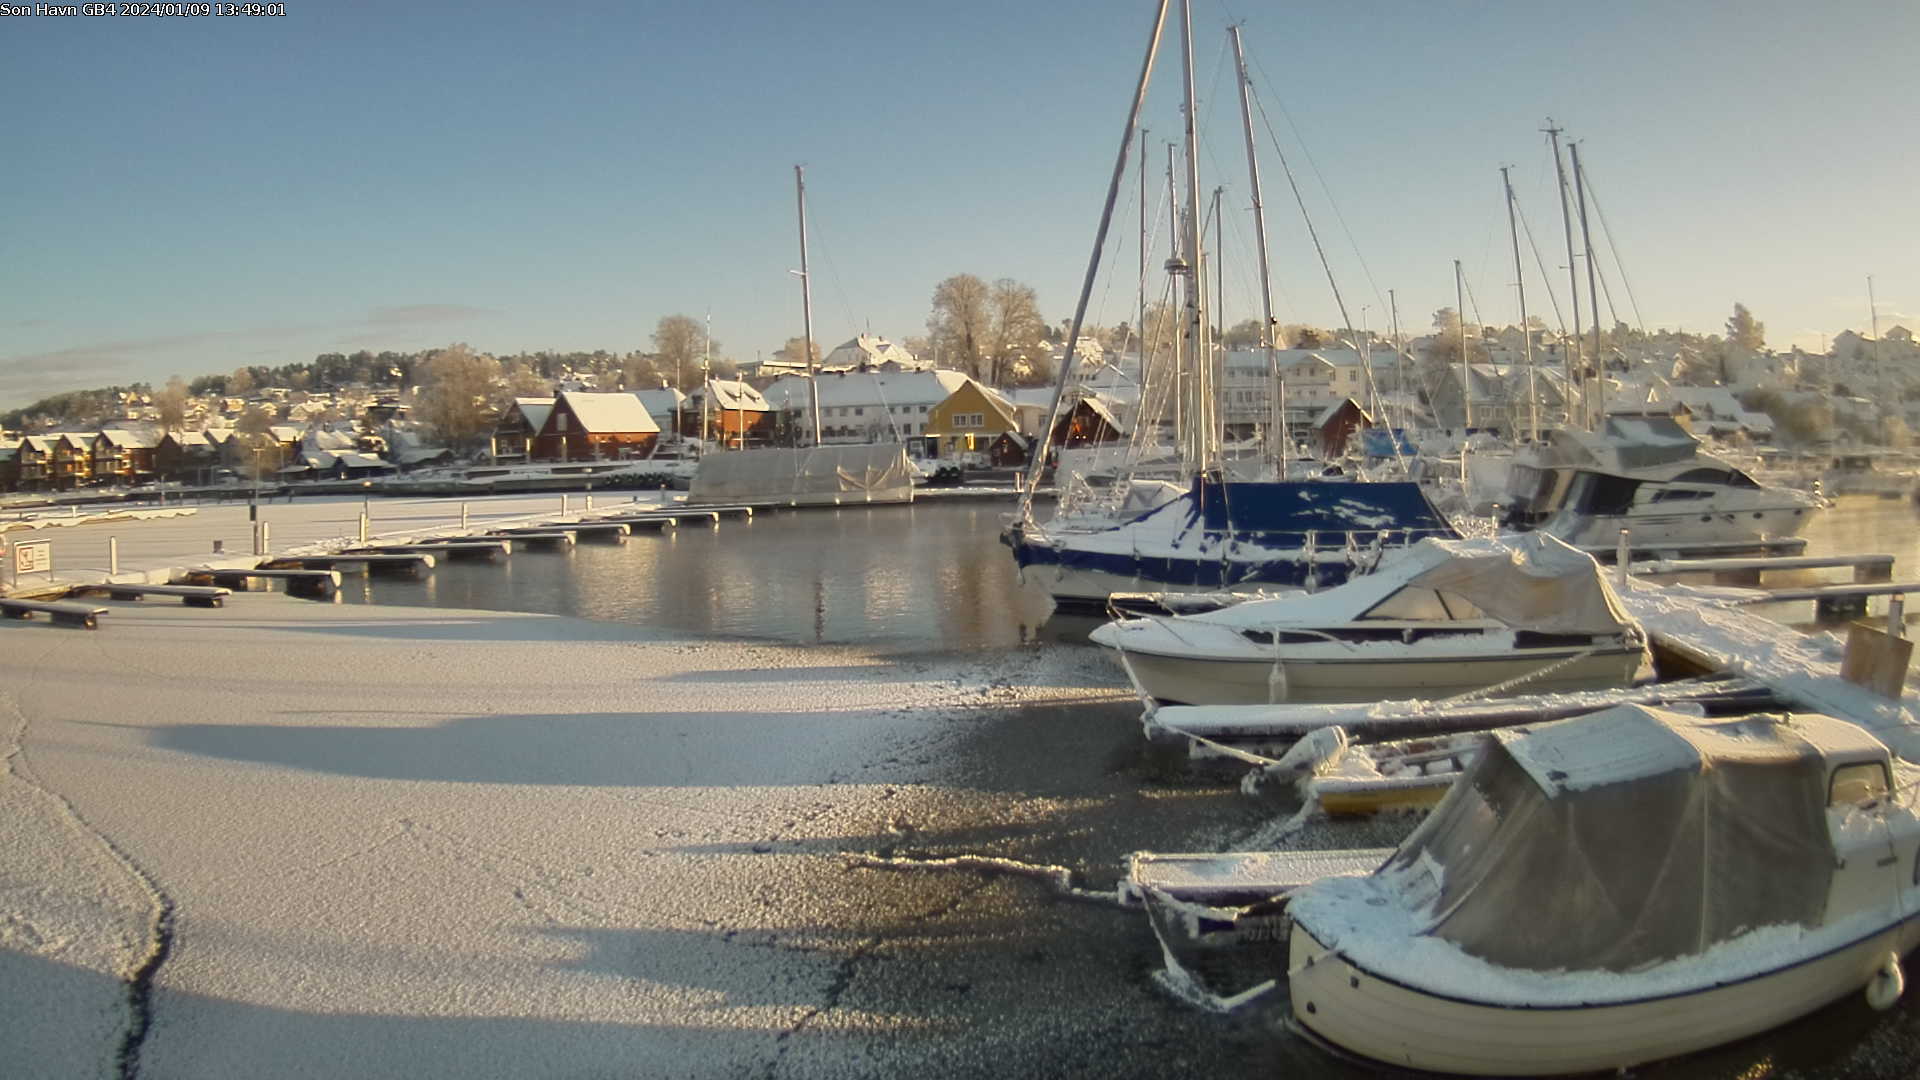 Son Gjestehavn - Havnas kamera ytterst på brygga